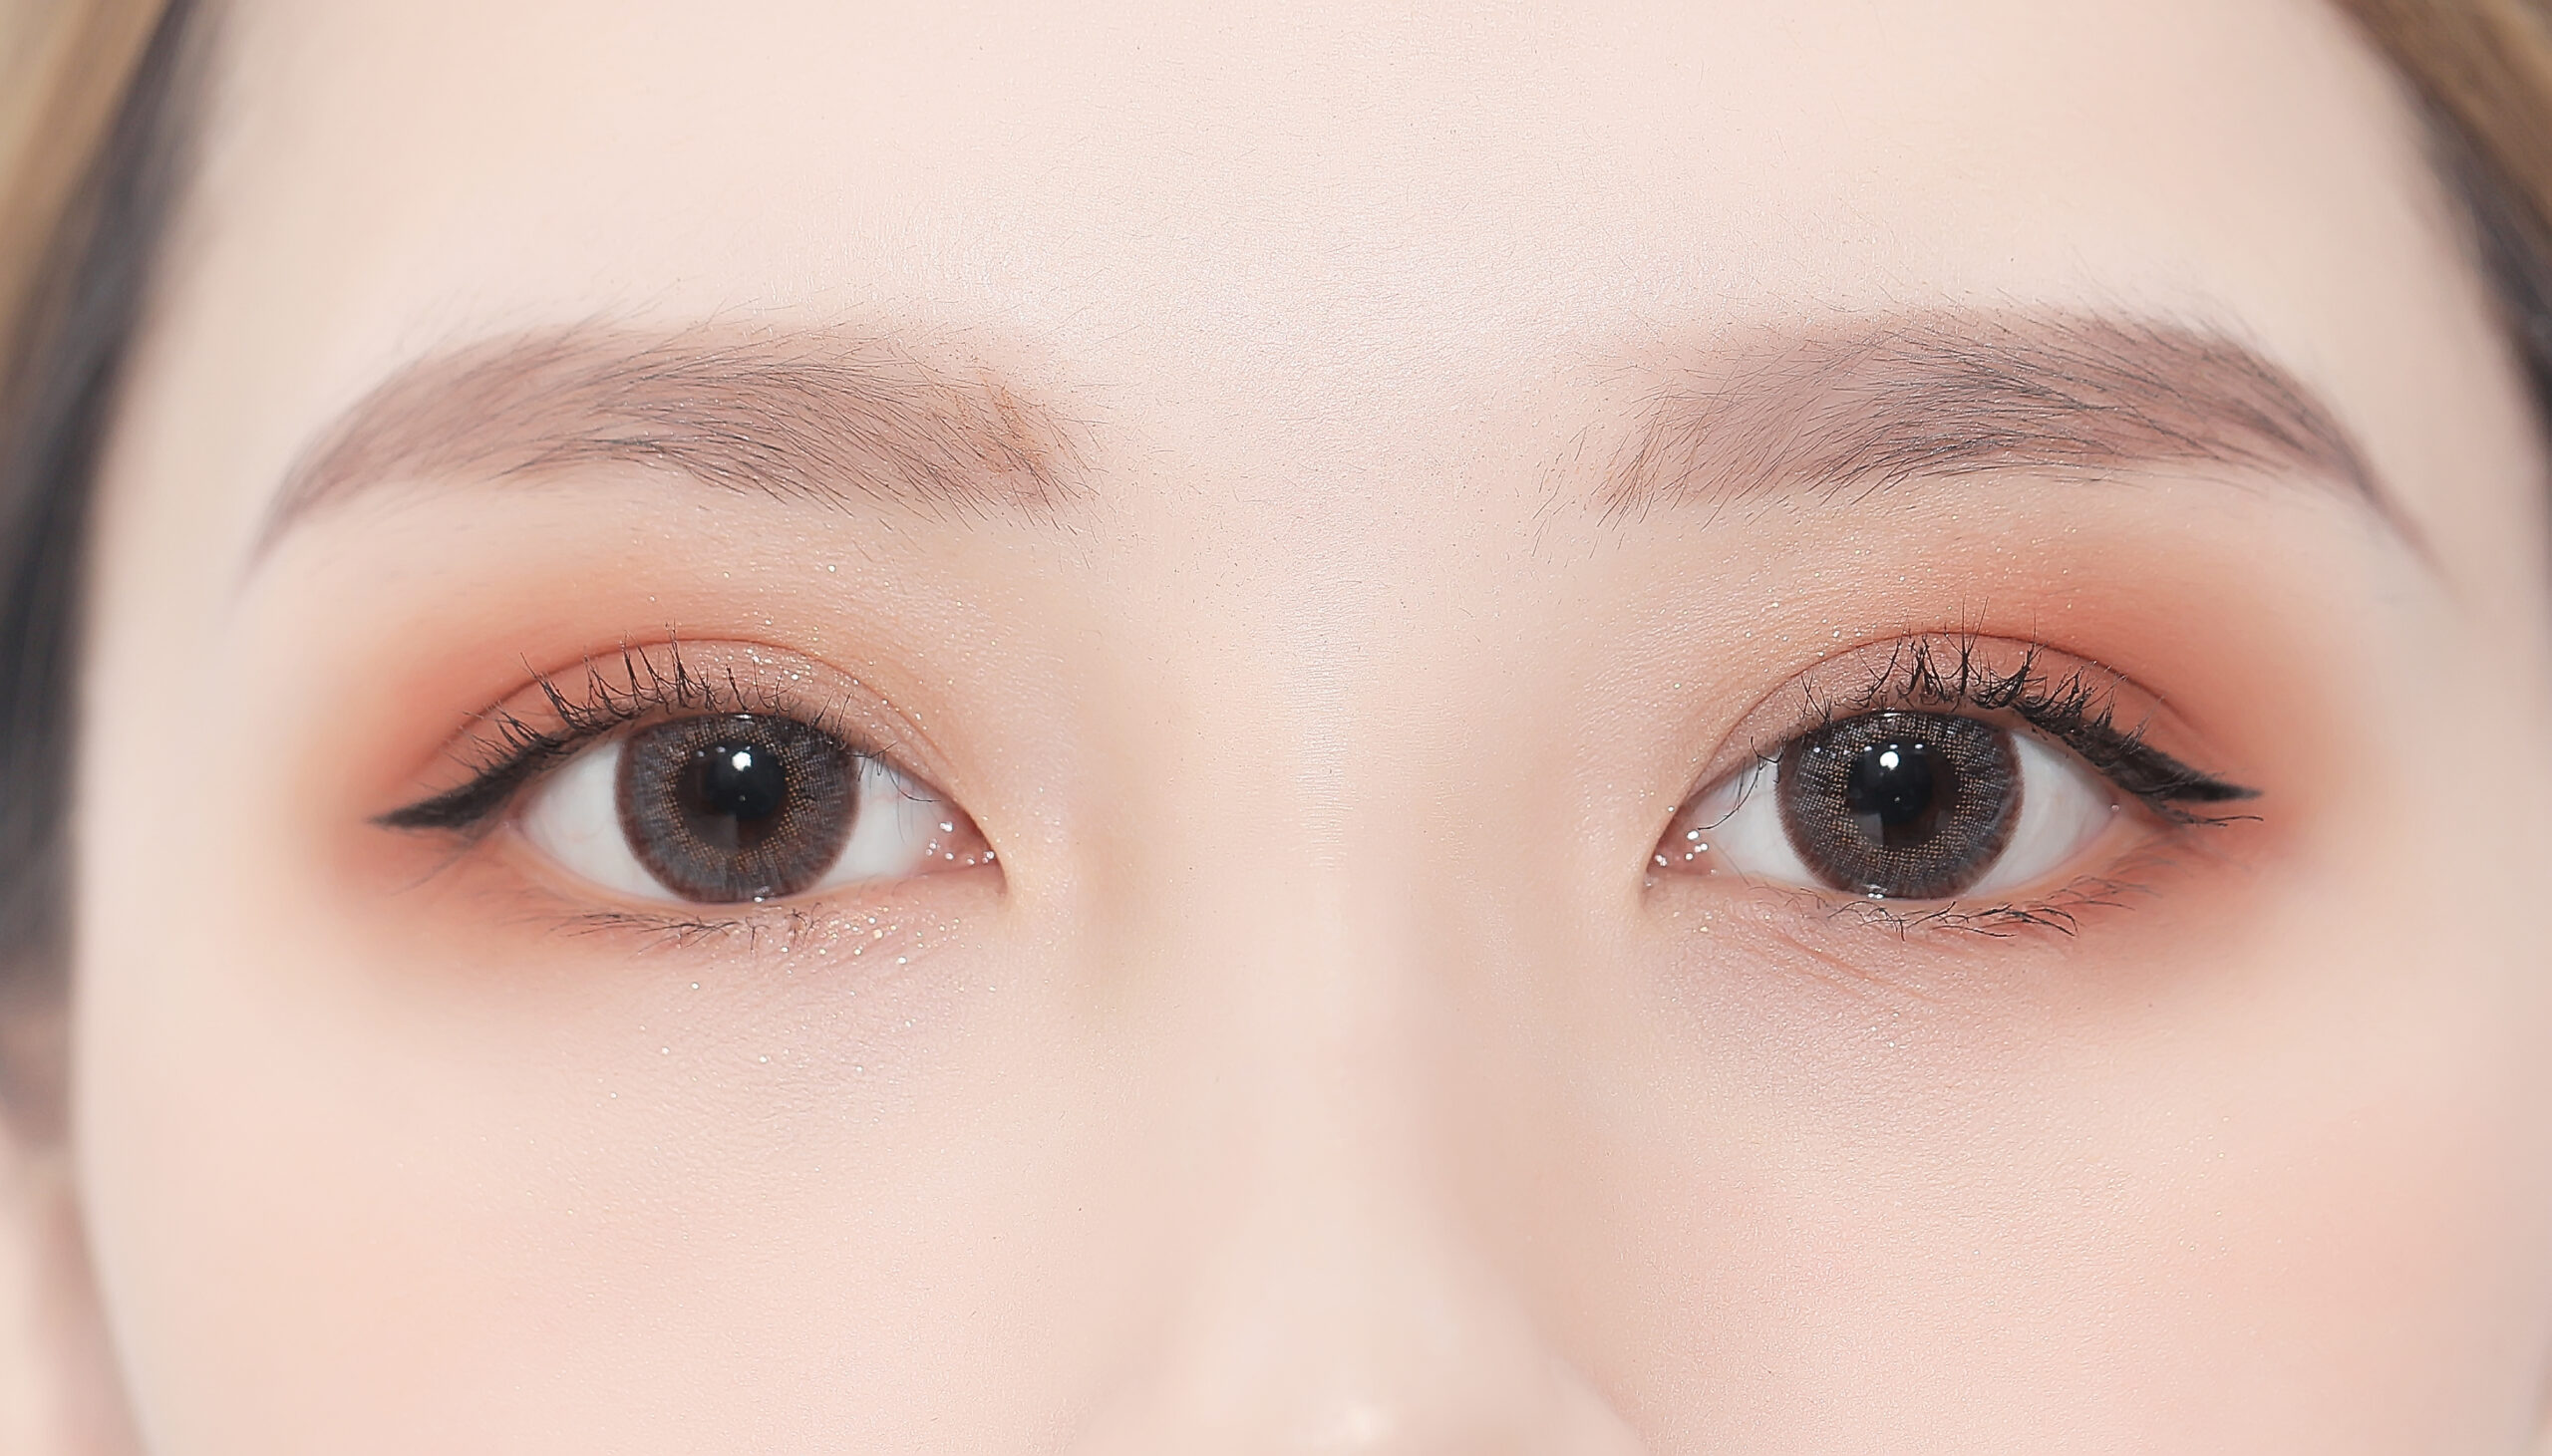 Cách kẻ eyeliner cho mắt 2 mí cực dễ giúp nàng xinh lung linh